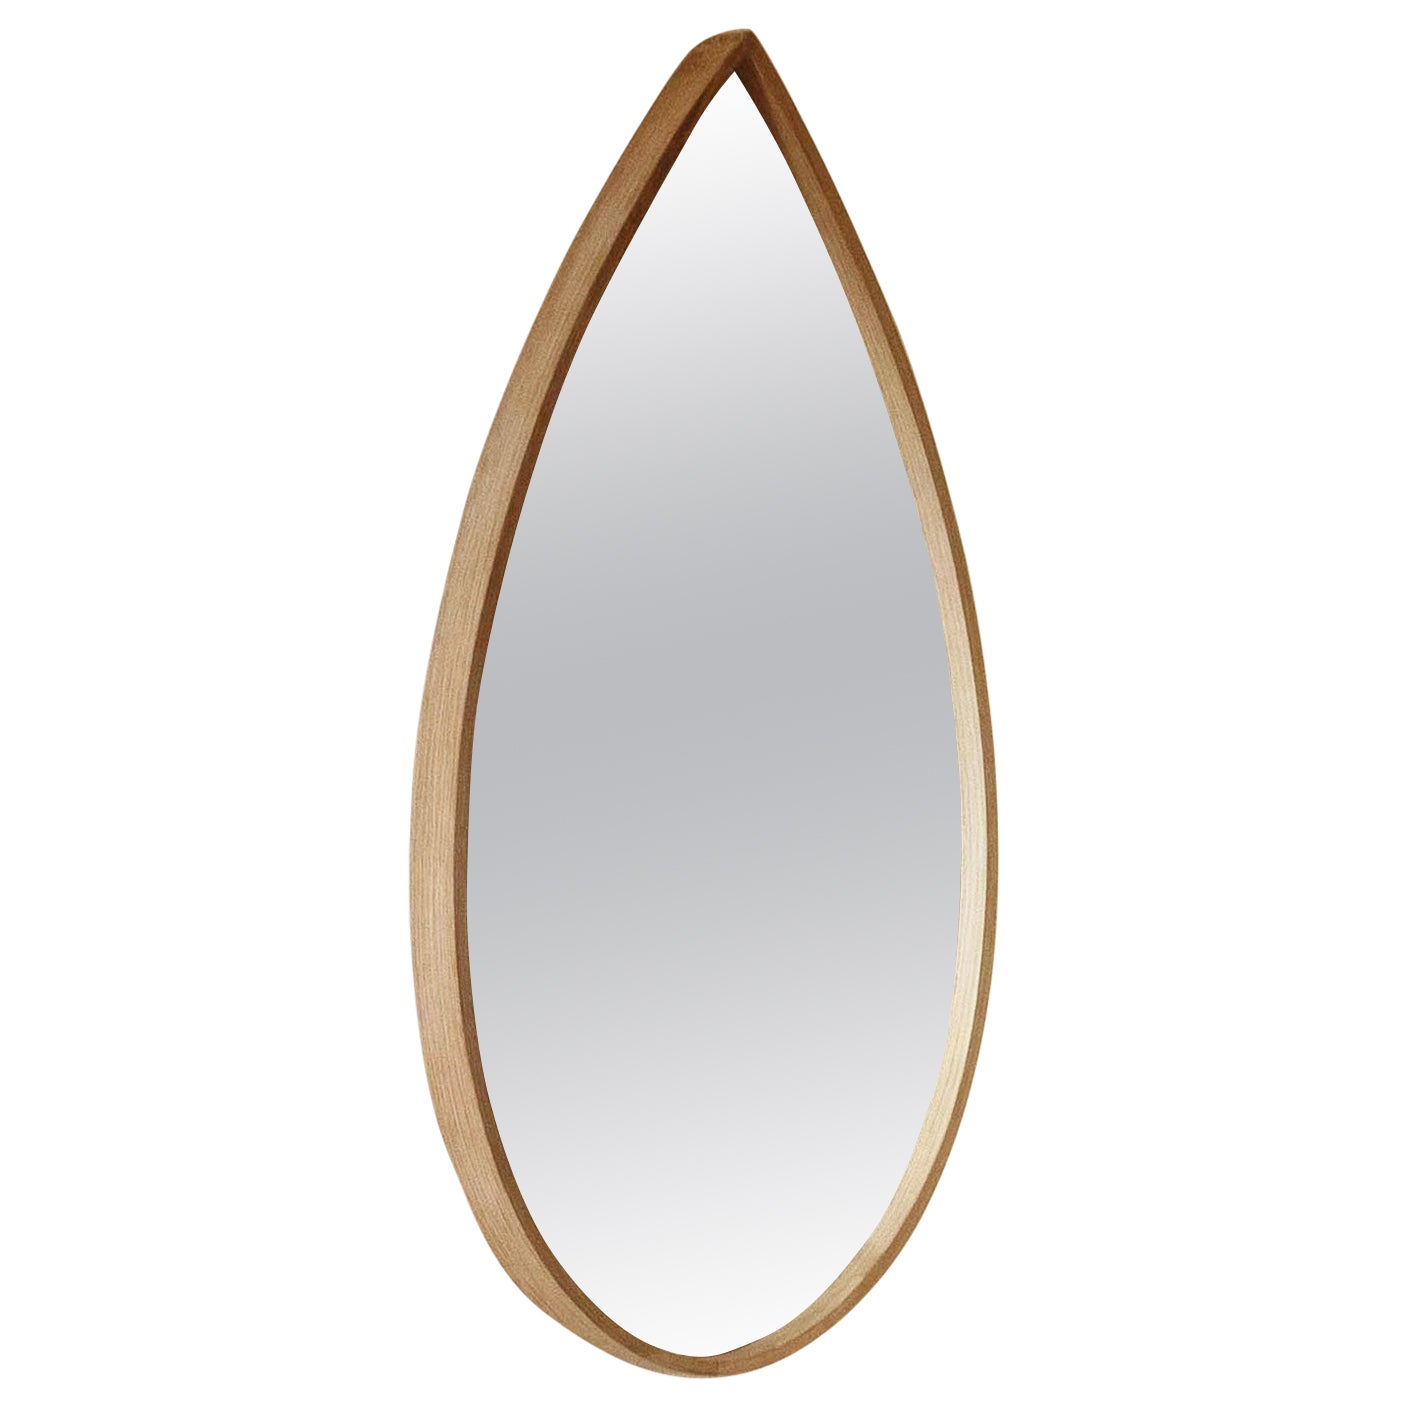 Organic Mirror, Wooden Steam-Bent Wall Mirror by Soo Joo